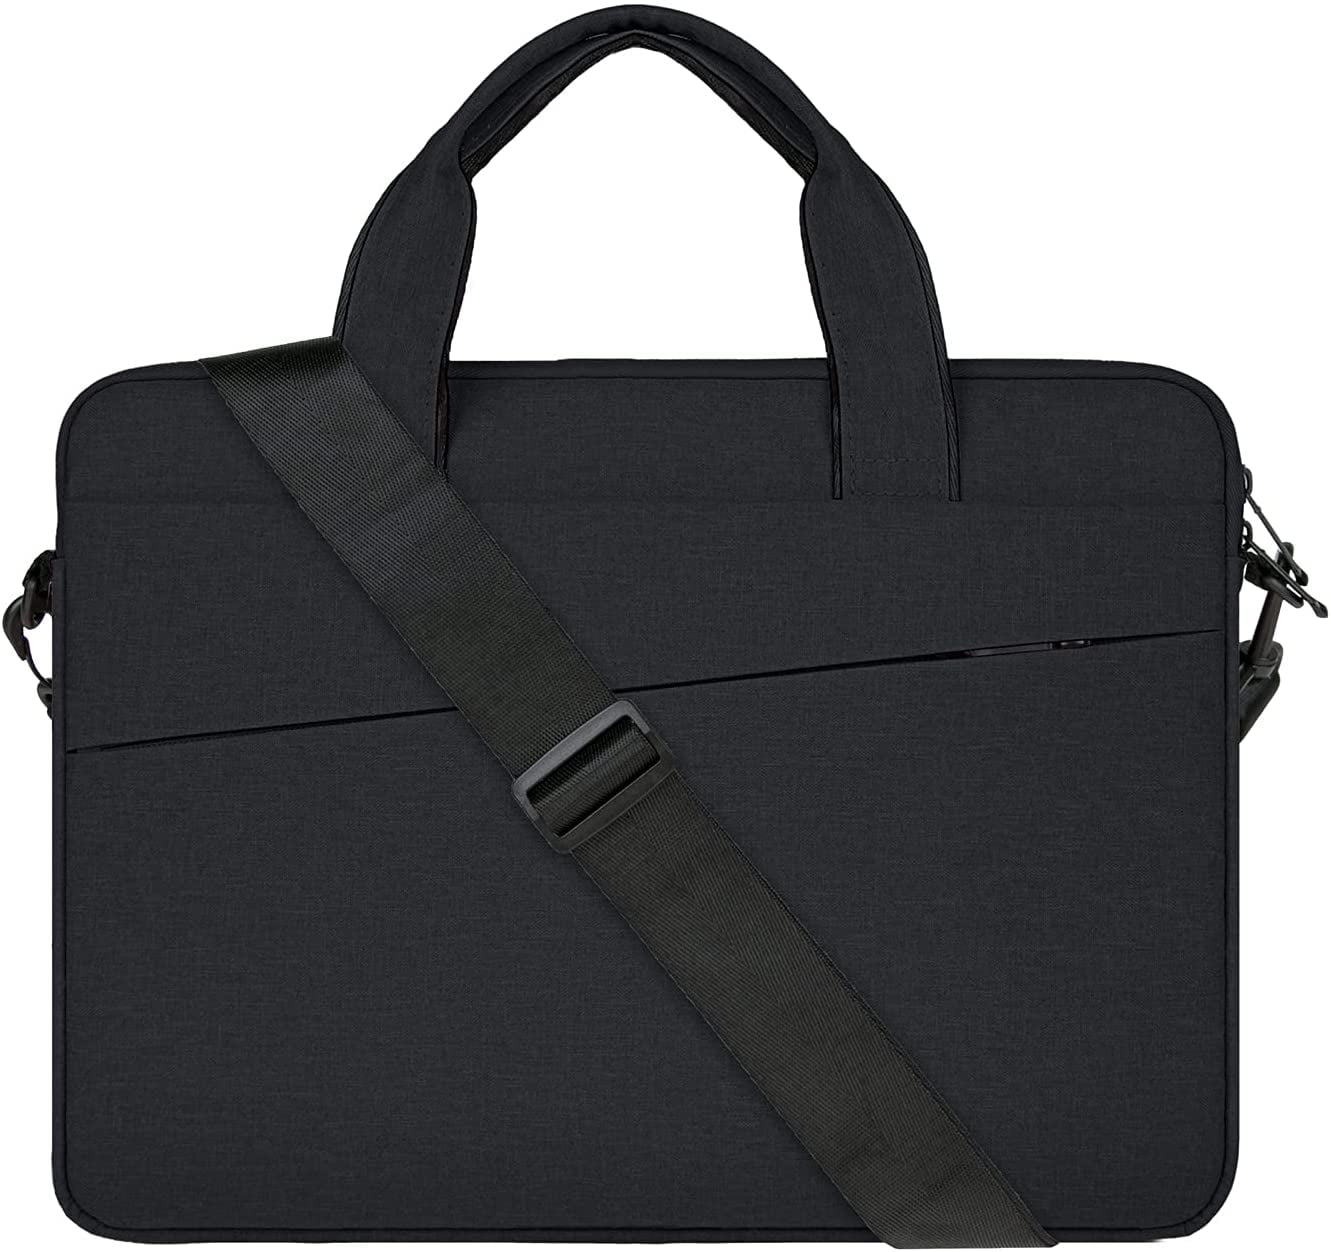 Laptop Shoulder Bag 15 Inch Briefcase Document Messenger Bag with Handle & Shoulder Strap Retro Red Black Plaid